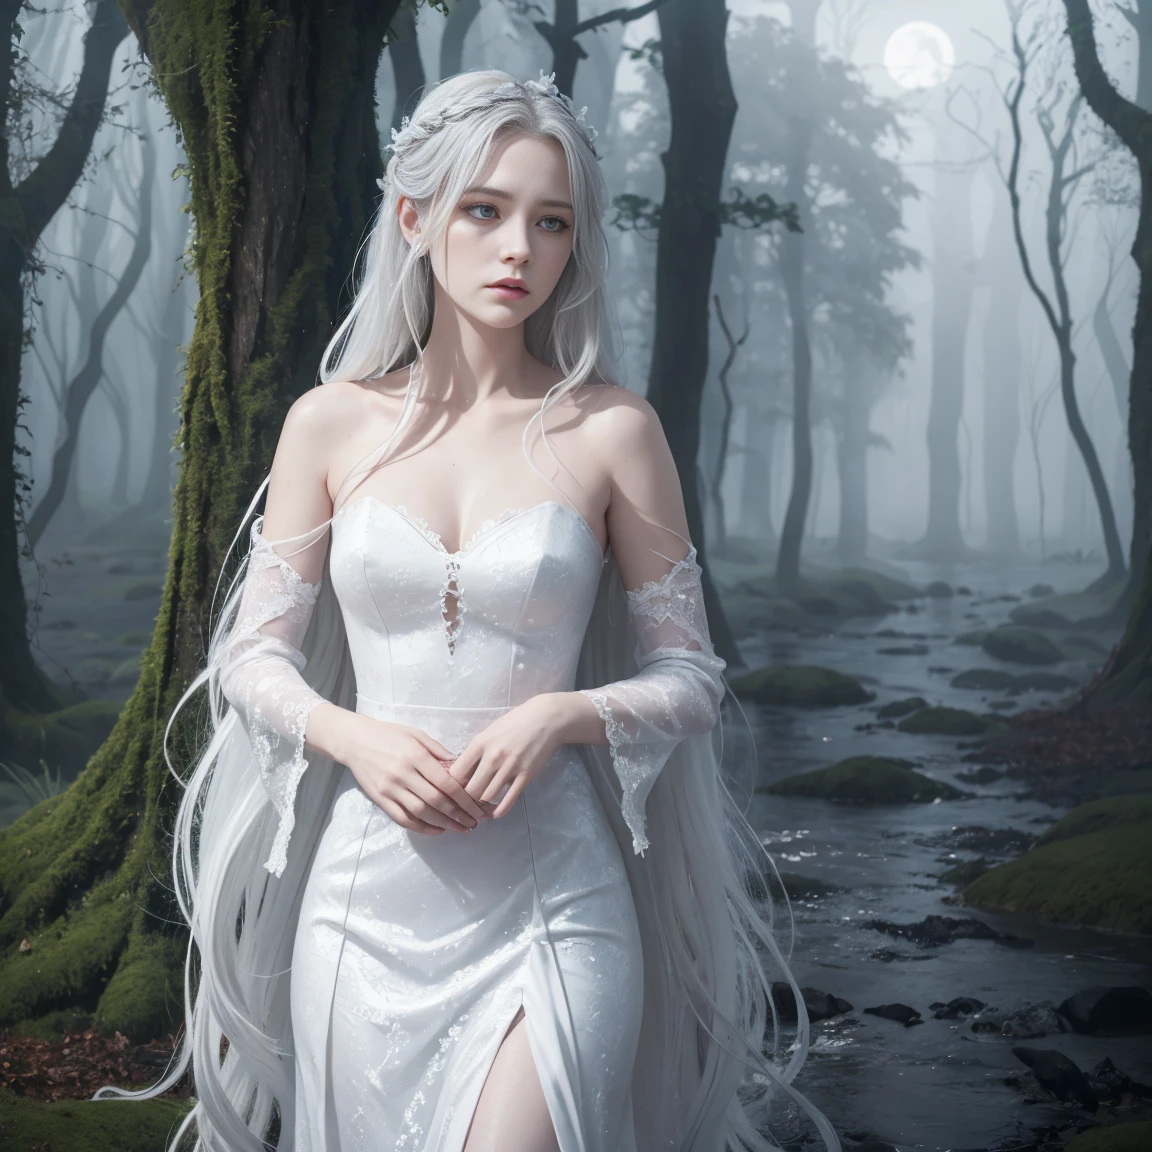 Eine Darstellung einer Banshee, der irische Geist, mit langen silbernen Haaren und einem traurigen Gesichtsausdruck. Sie trägt ein fließendes weißes Kleid und steht vor einem nebligen, unheimliche Kulisse eines mondbeschienenen Waldes oder einer alten Burg.
